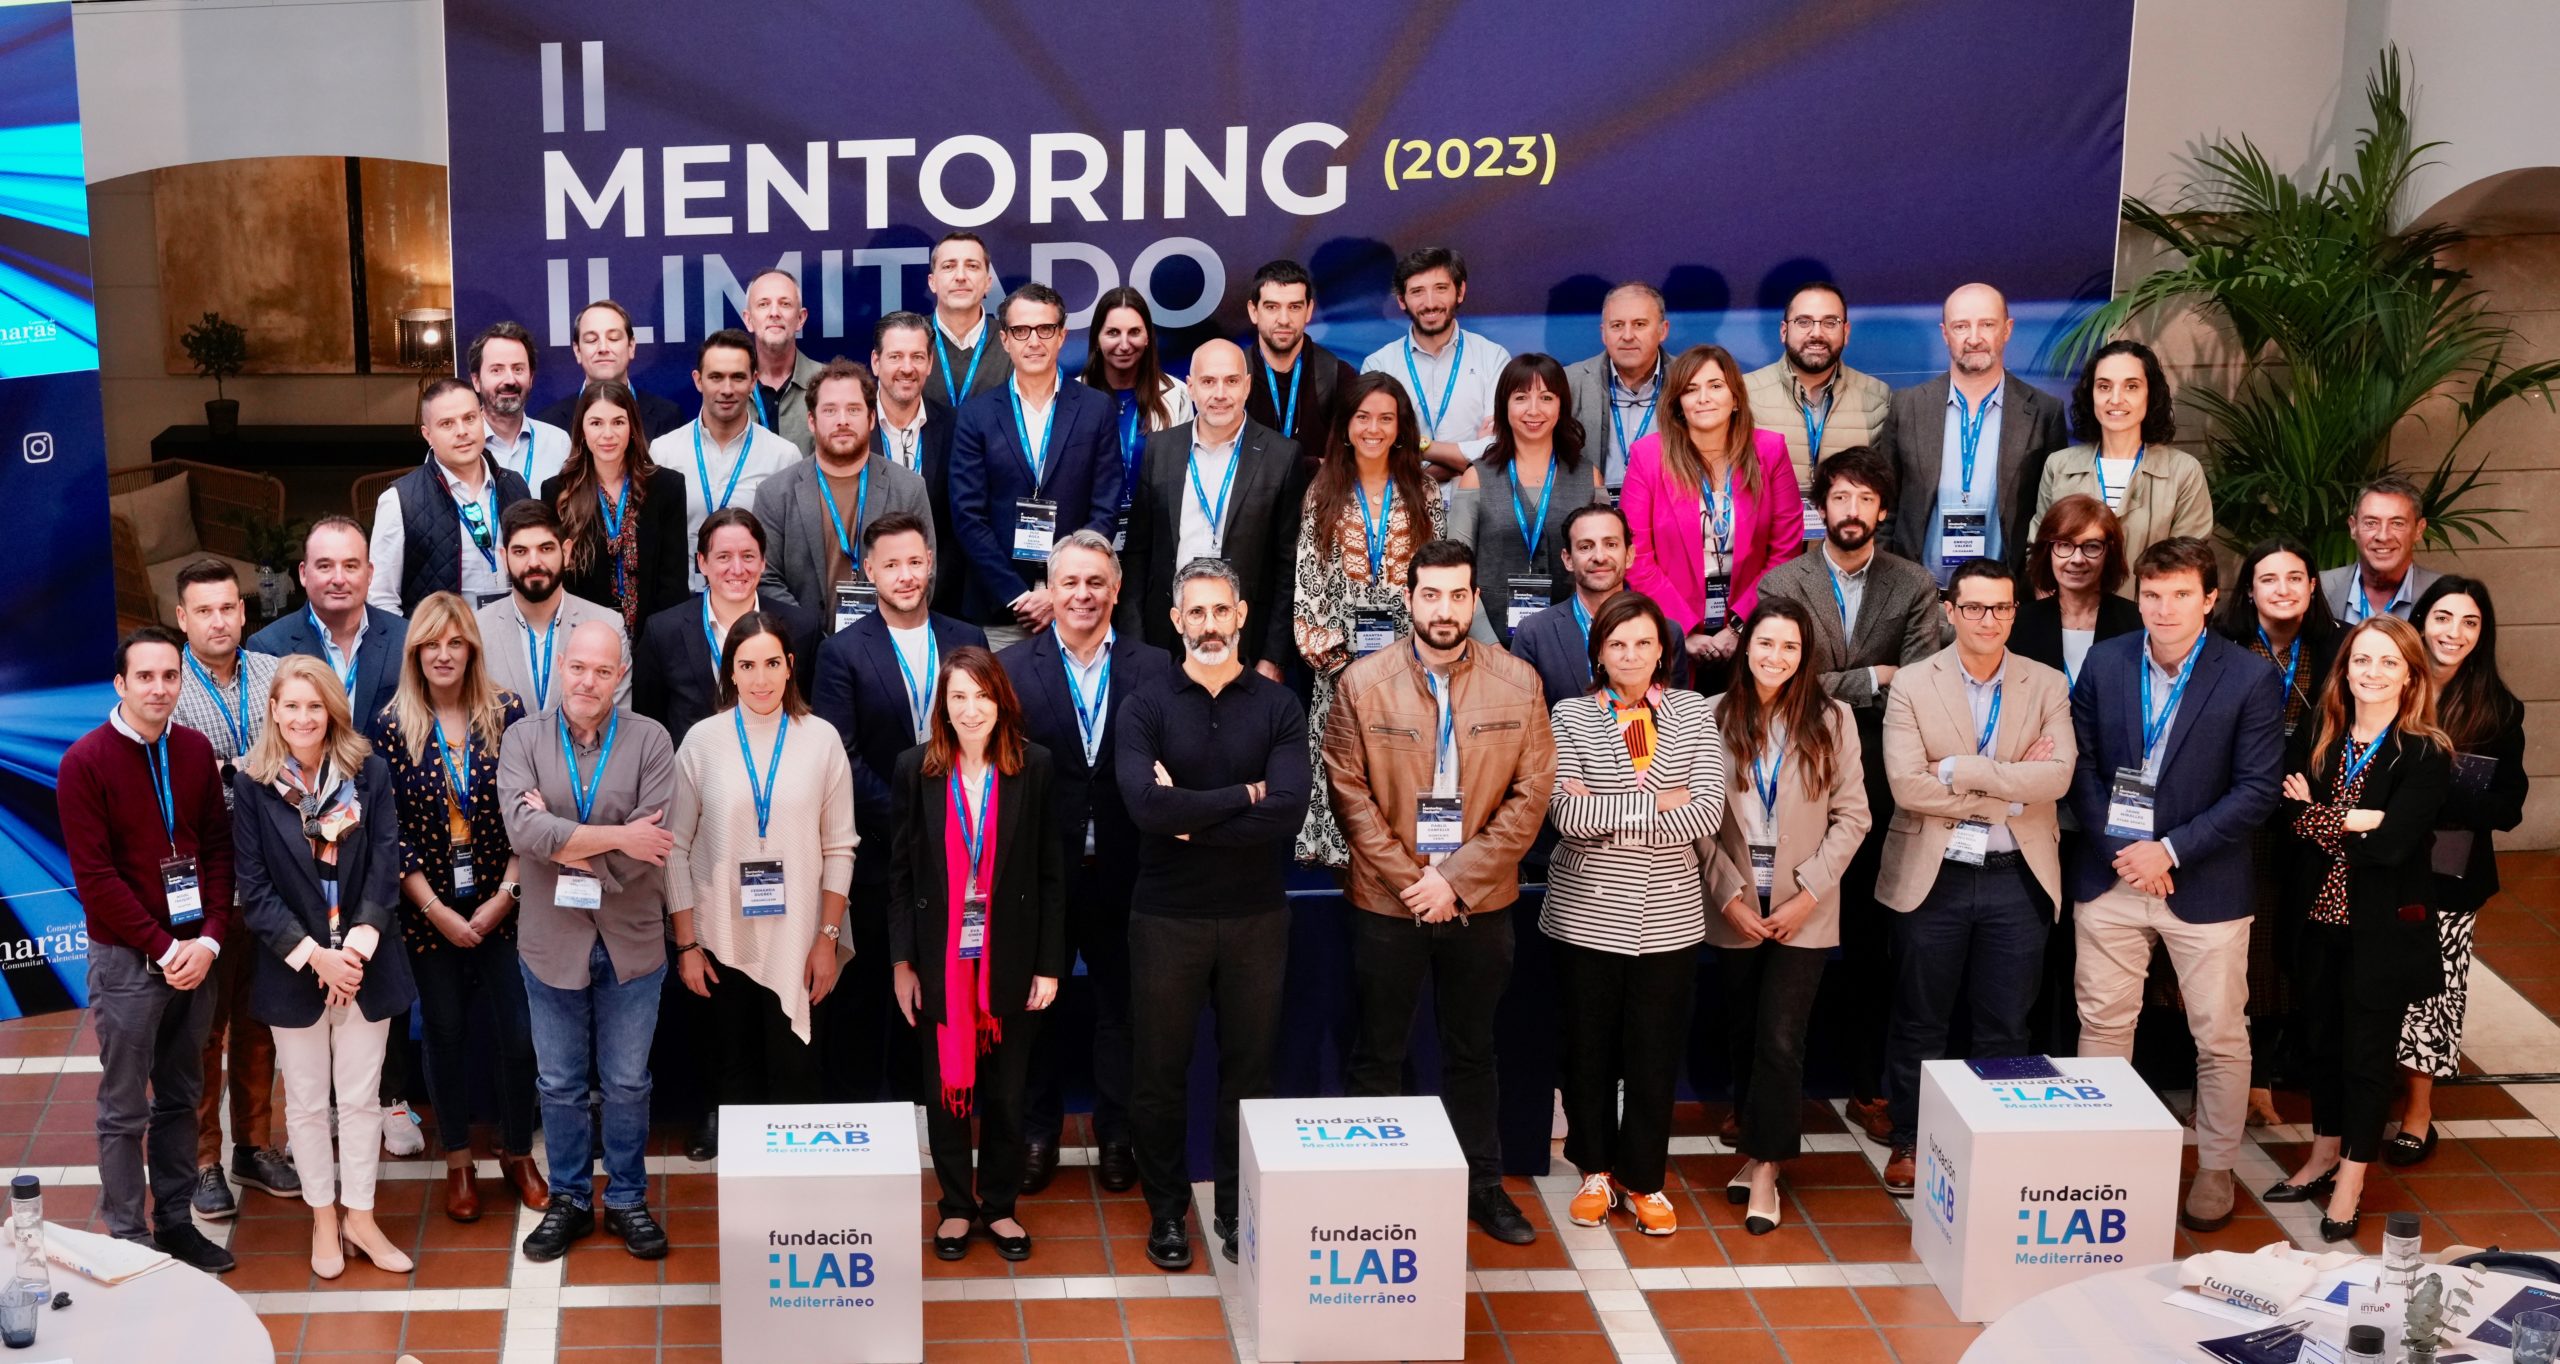 Fundación LAB Mediterráneo organiza su “II Mentoring Ilimitado” para ayudar a pymes a resolver desafíos en innovación y tecnología